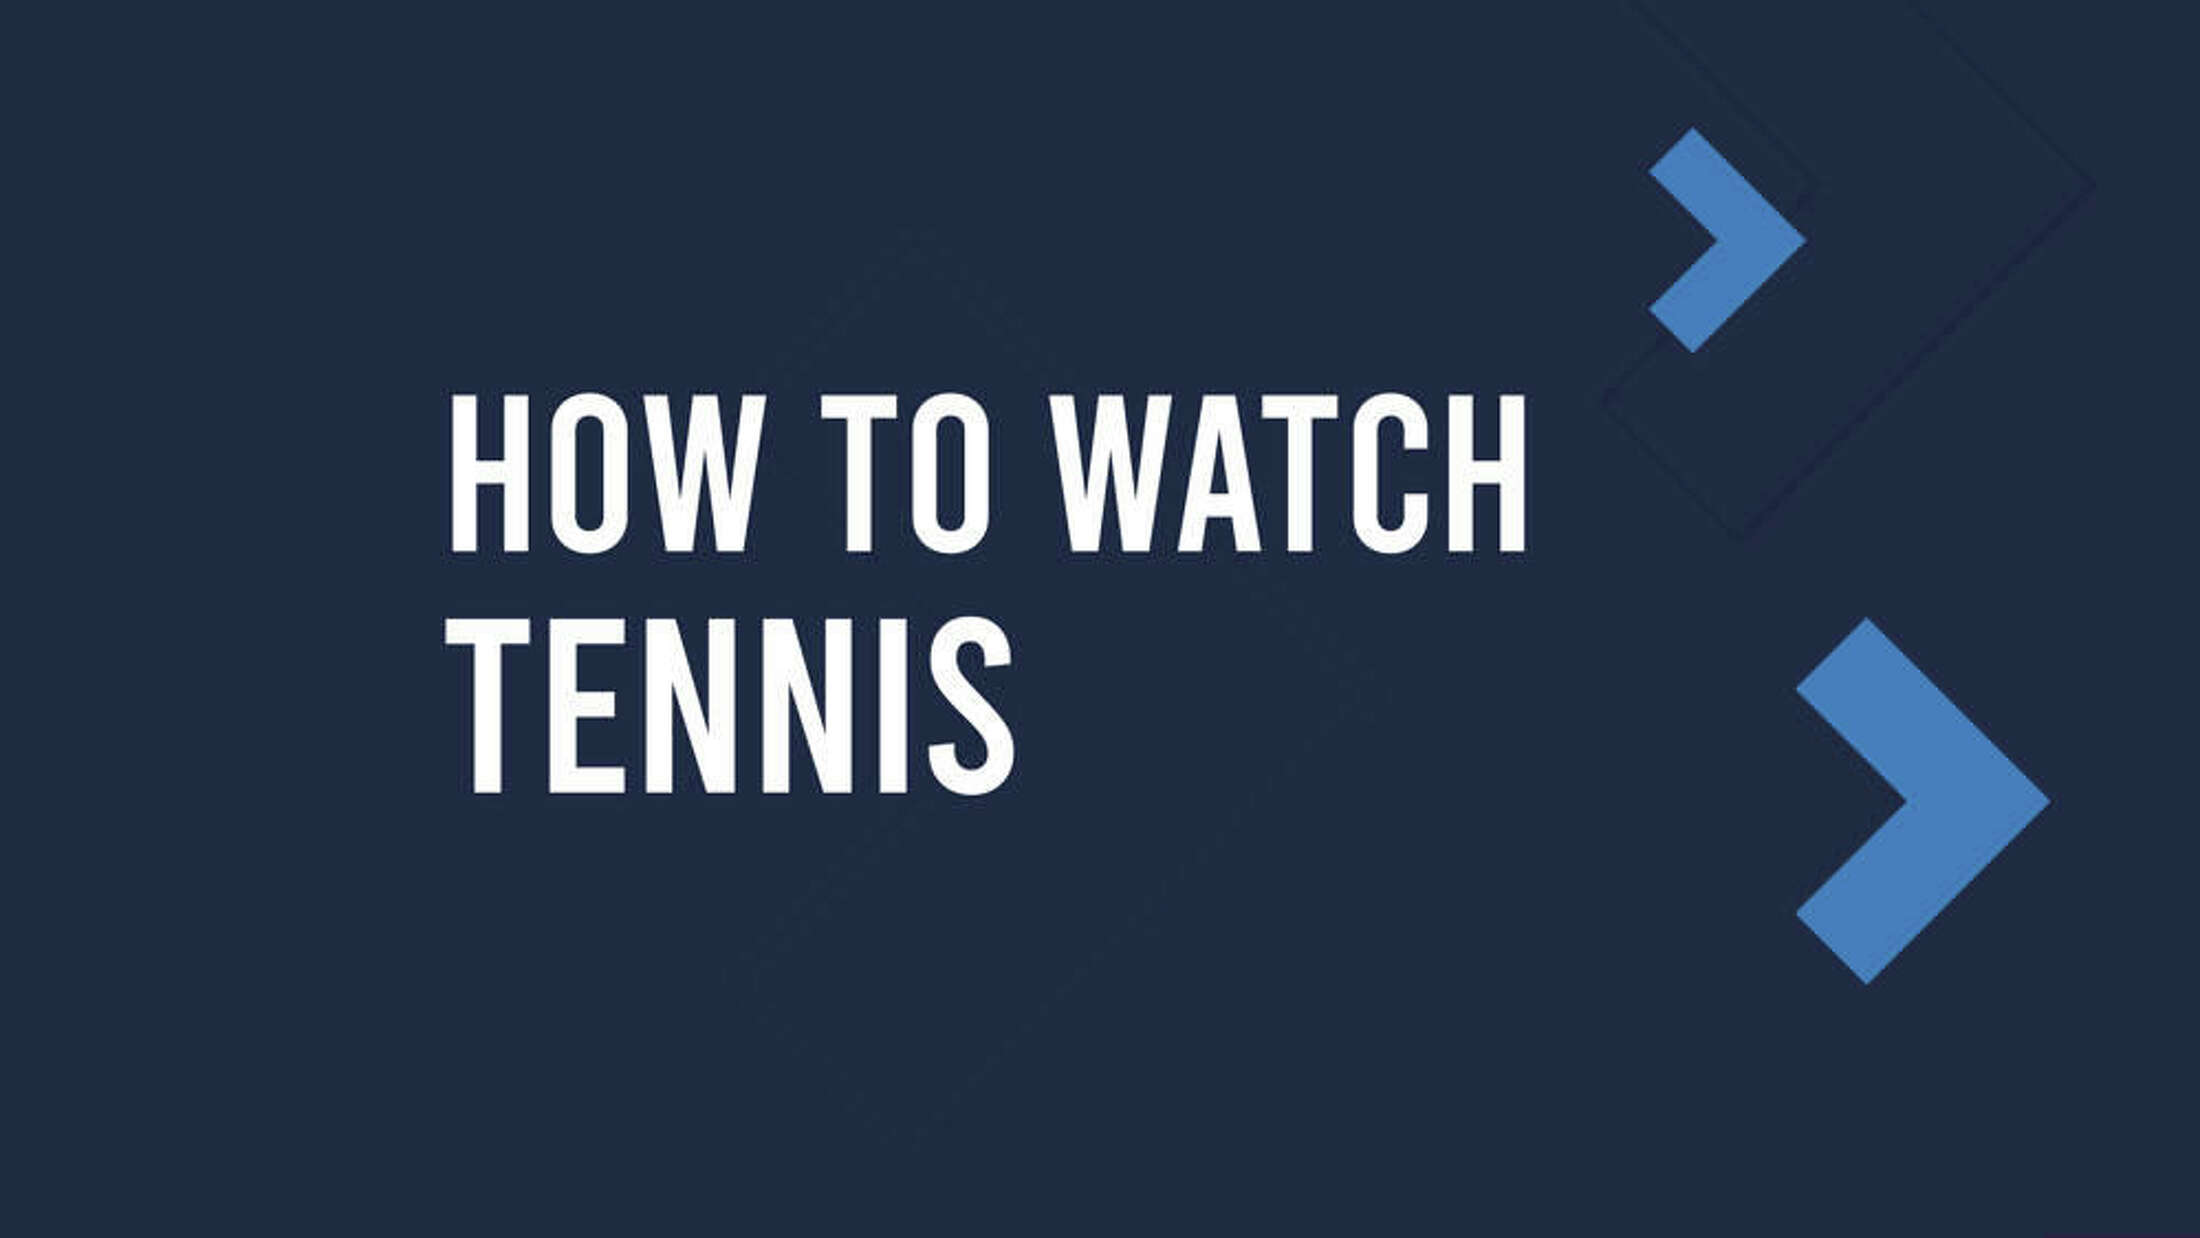 How to Watch Men's Terra Wortmann Open Live Stream and on TV June 19